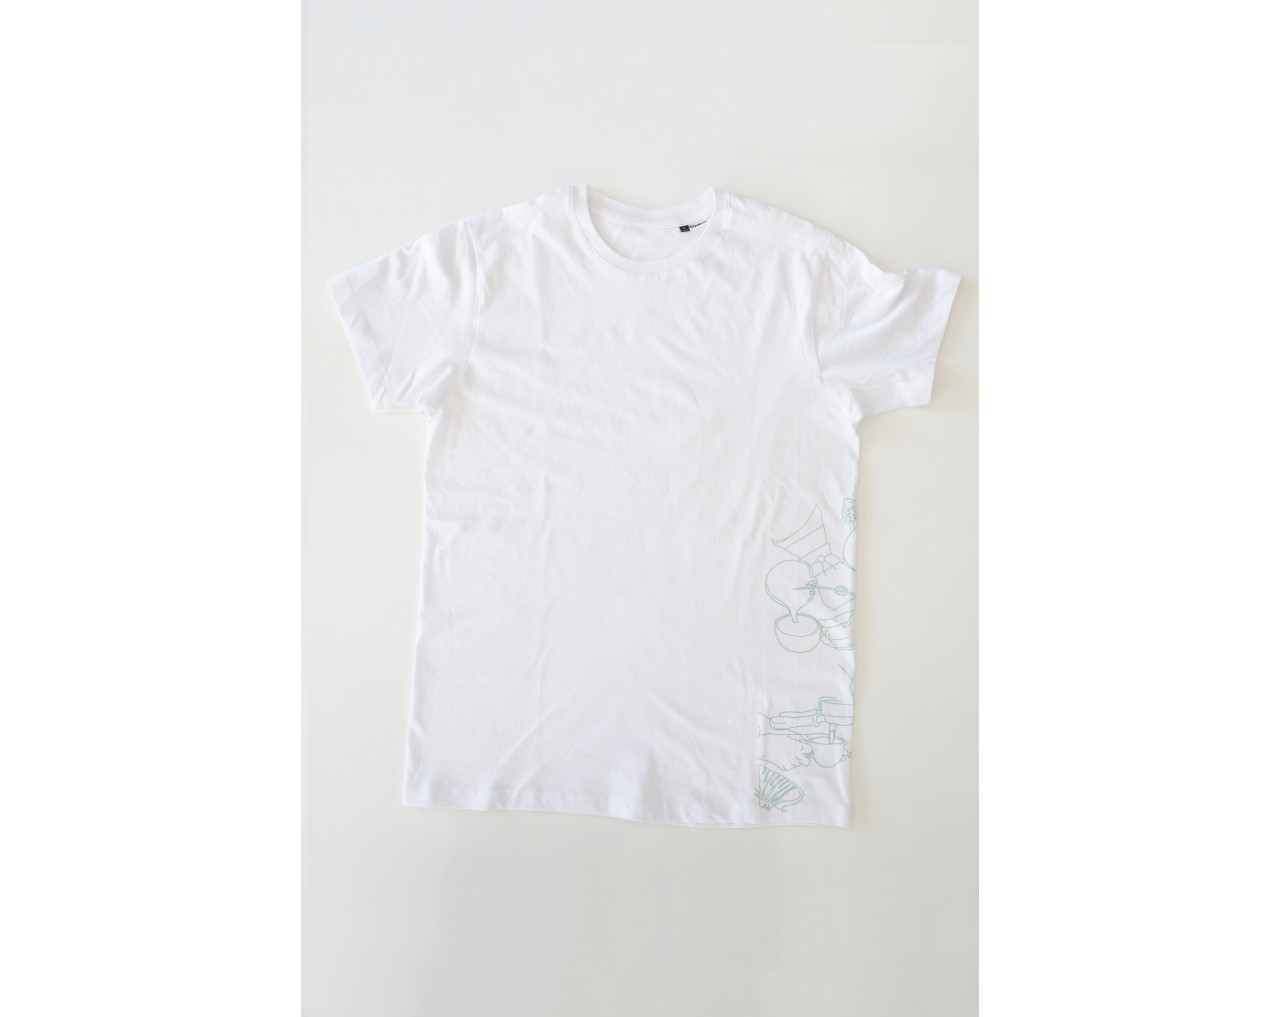 Taf White T-shirt